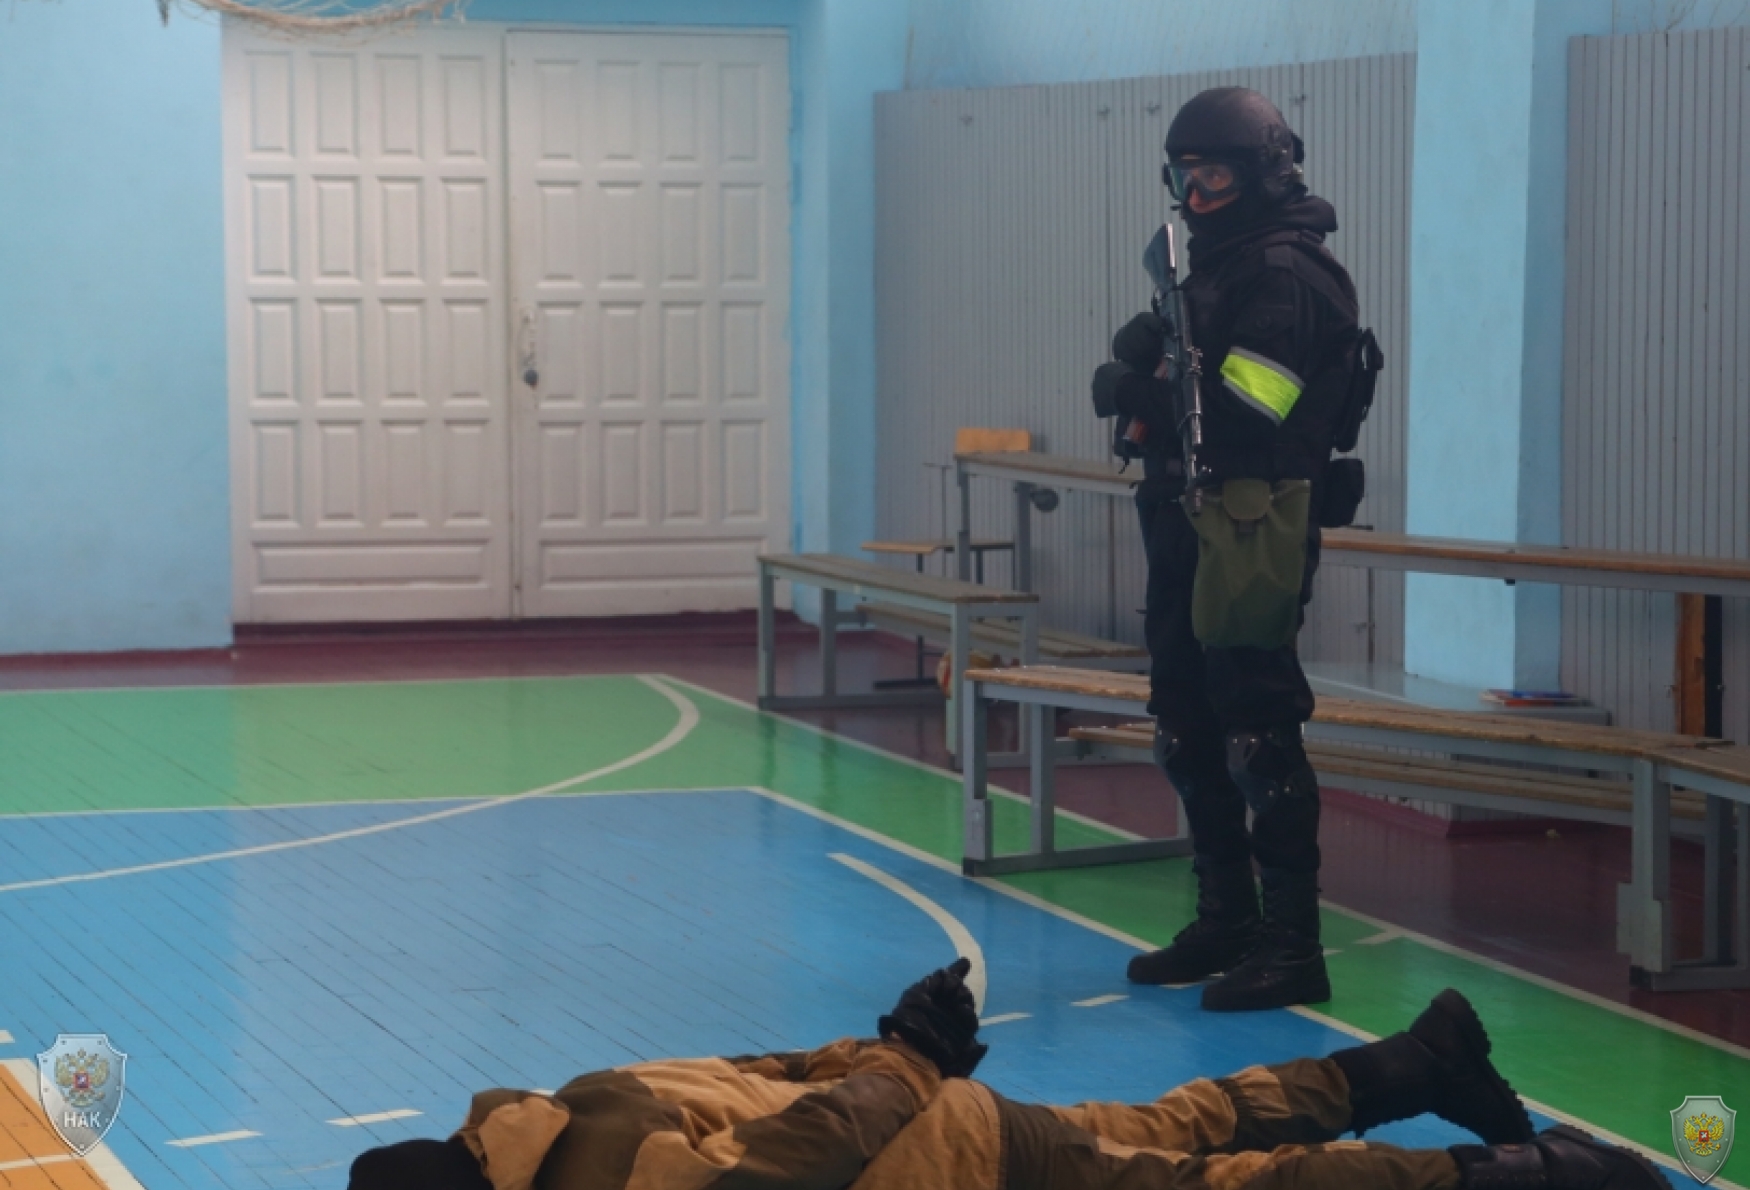 Оперативным штабом Республики Алтай проведено тактико-специальное учение